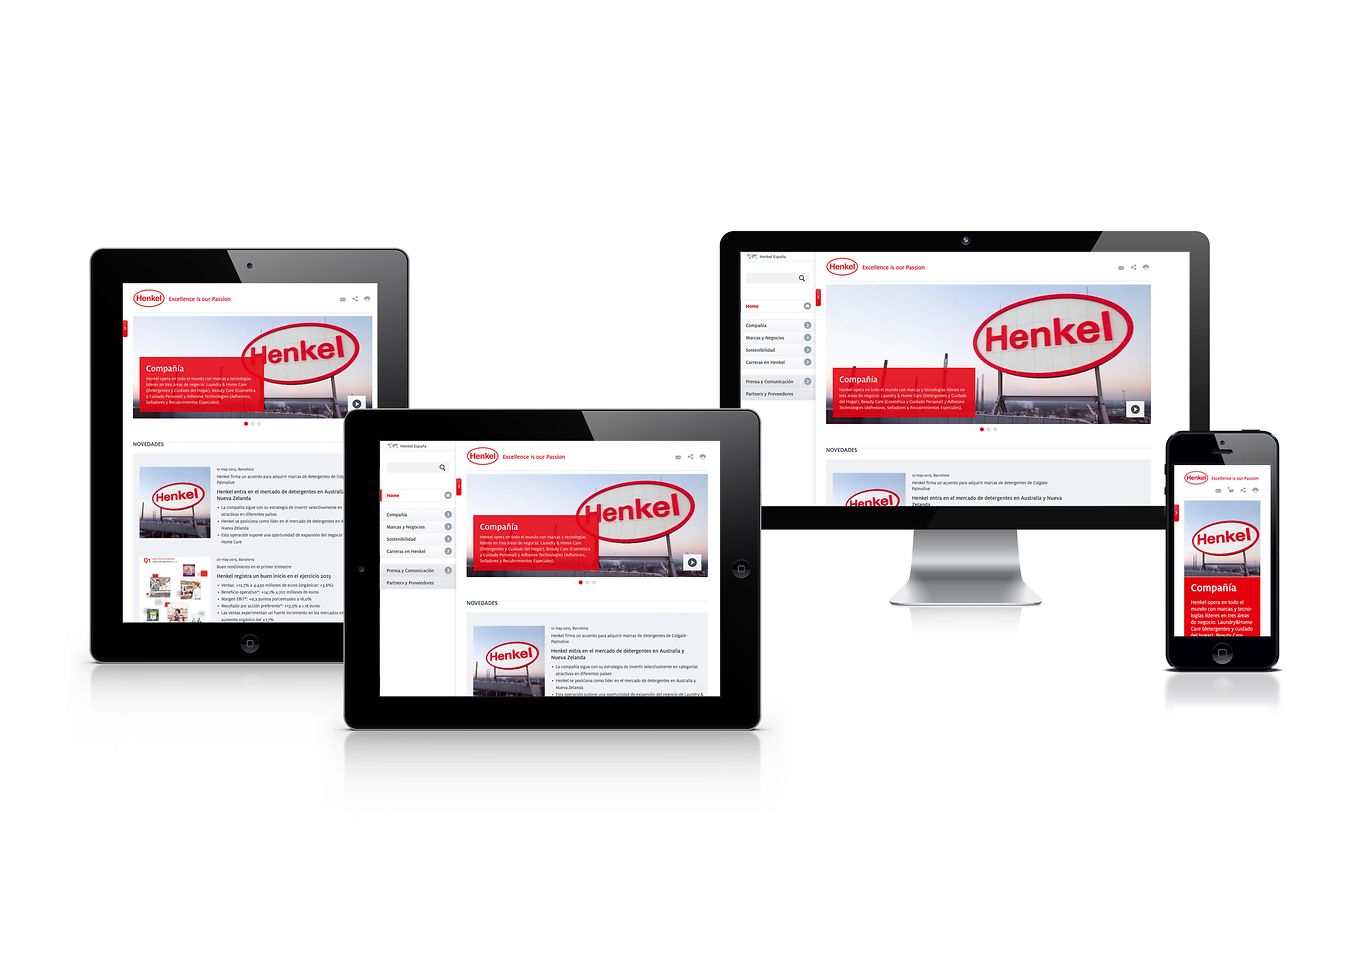 
La nueva página web corporativa de Henkel funciona en todos los dispositivos, proporcionando así la mejor experiencia al usuario.